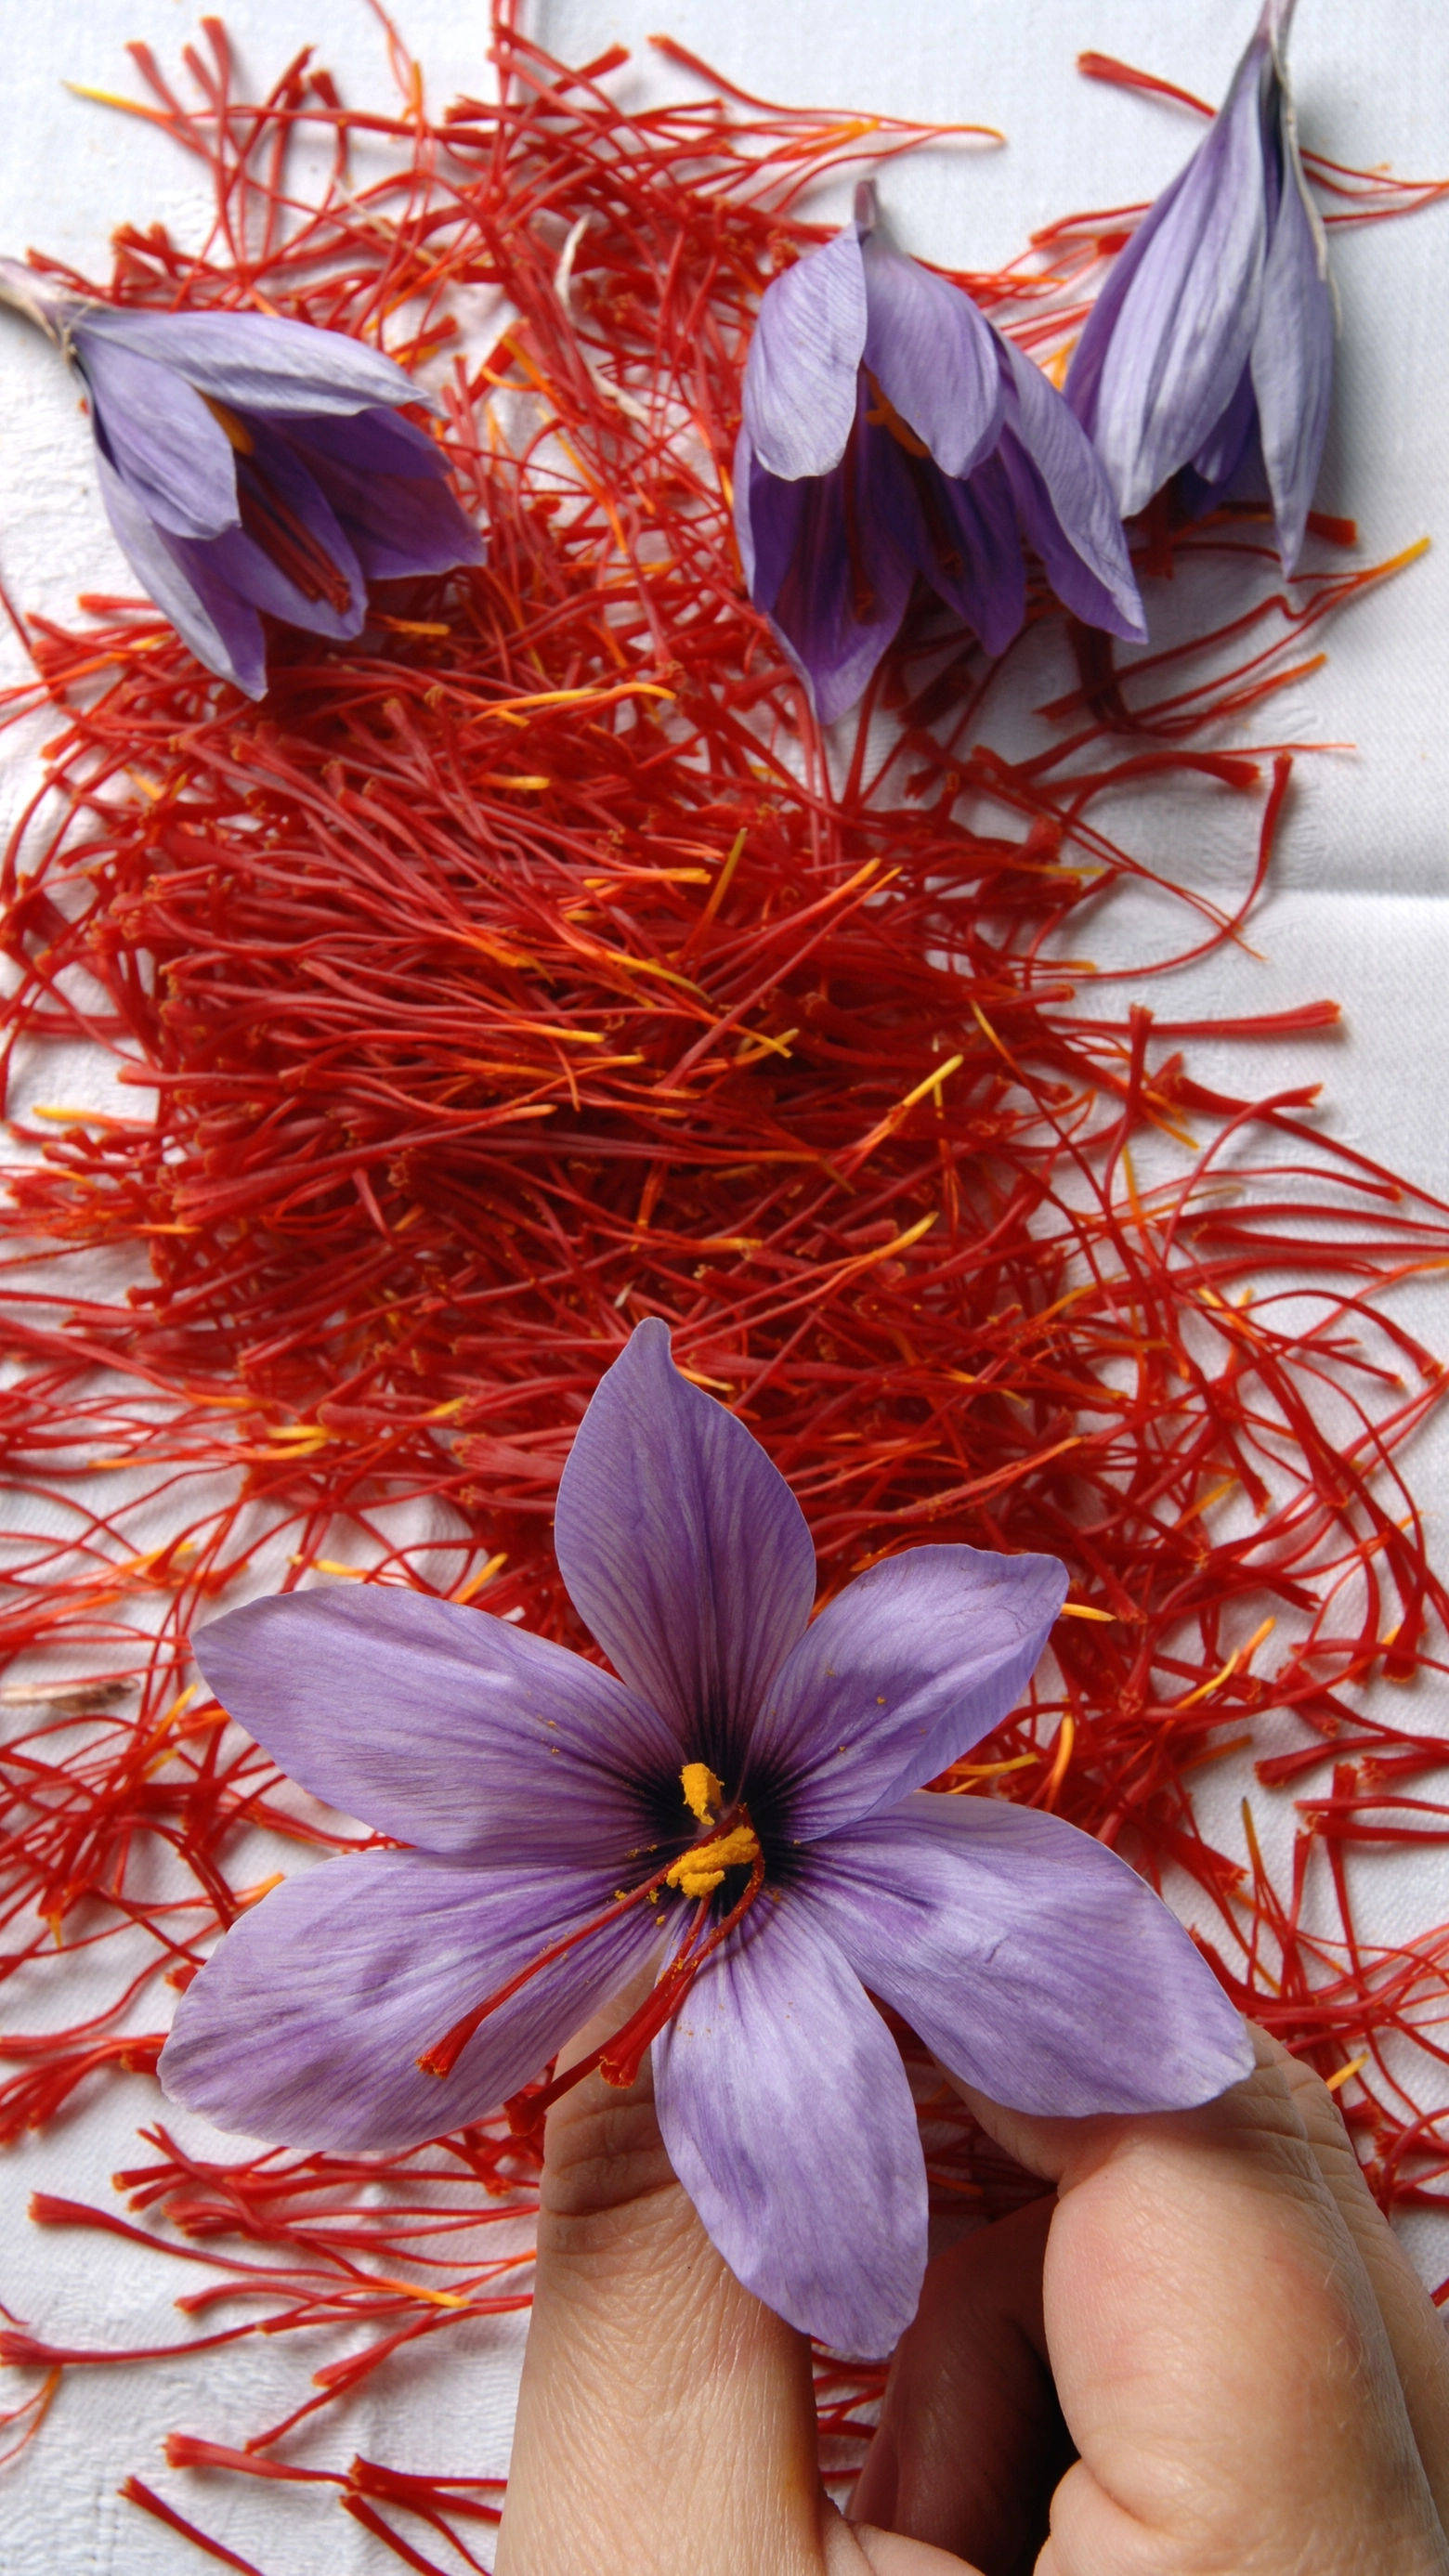 La Zafferano, prodotto tipico di di Città della Pieve, coi suoi splendidi fior violetti e i pistilli rossi